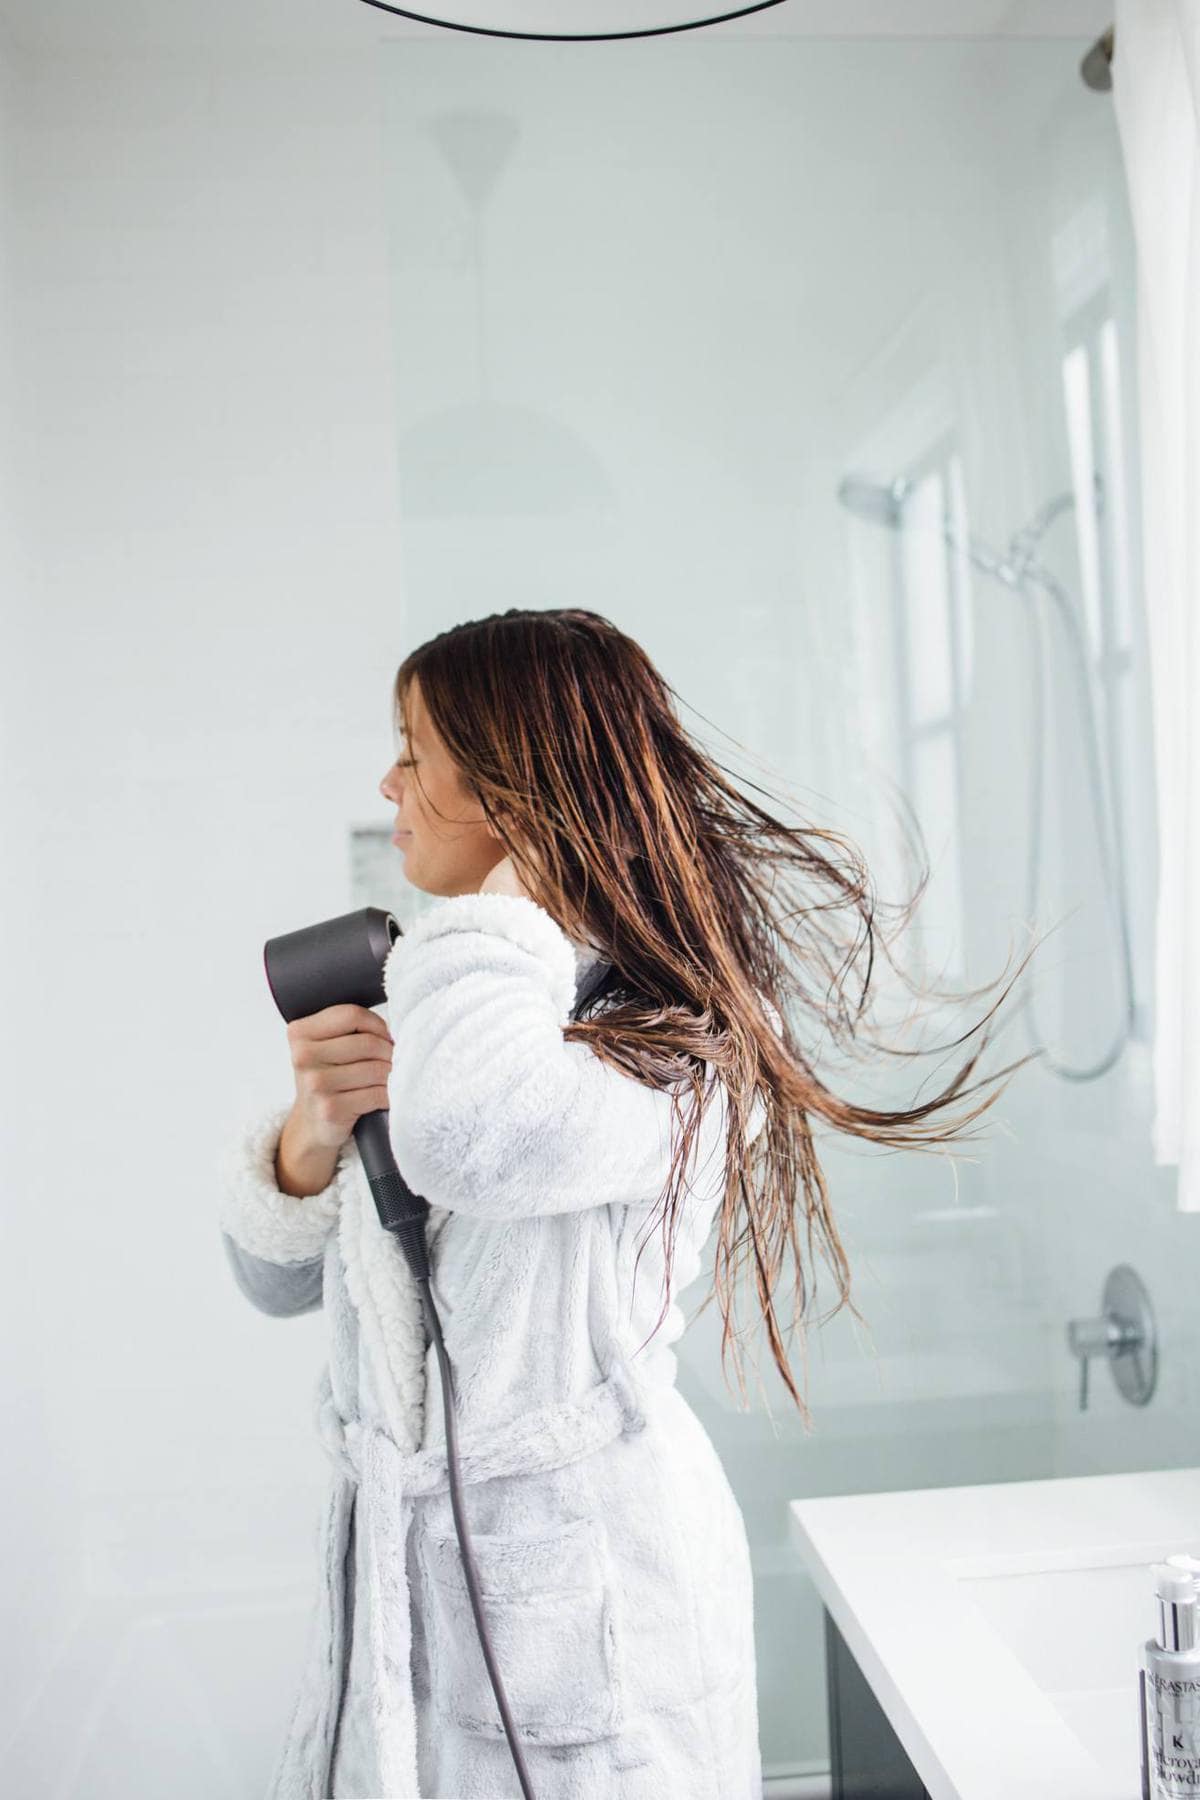 Sephora faves hair dryer 